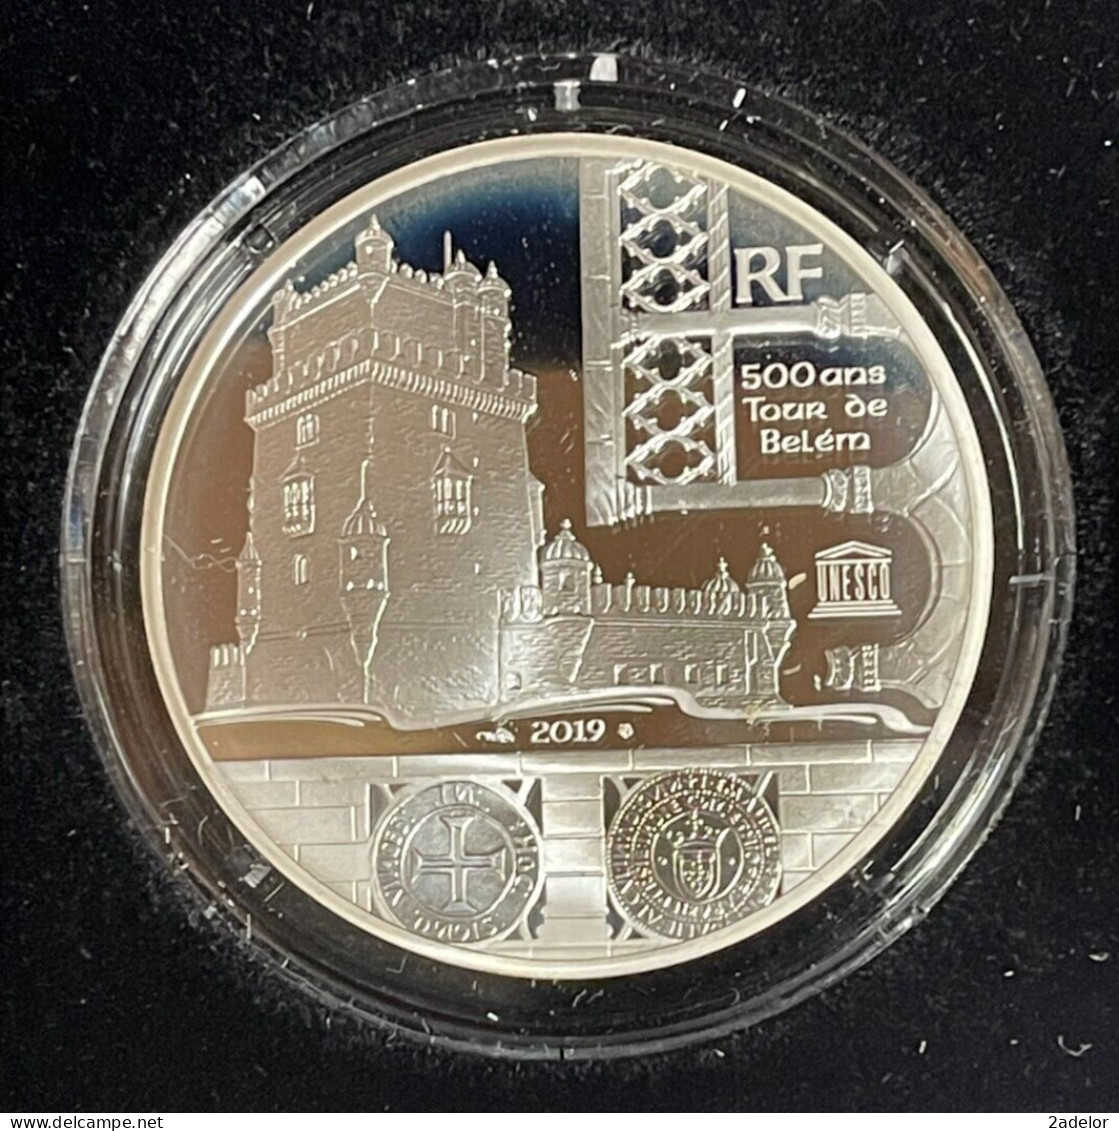 Beau Coffret 10€ BE, 2019. UNESCO, Tour De Belèm. Monnaie De Paris. - France